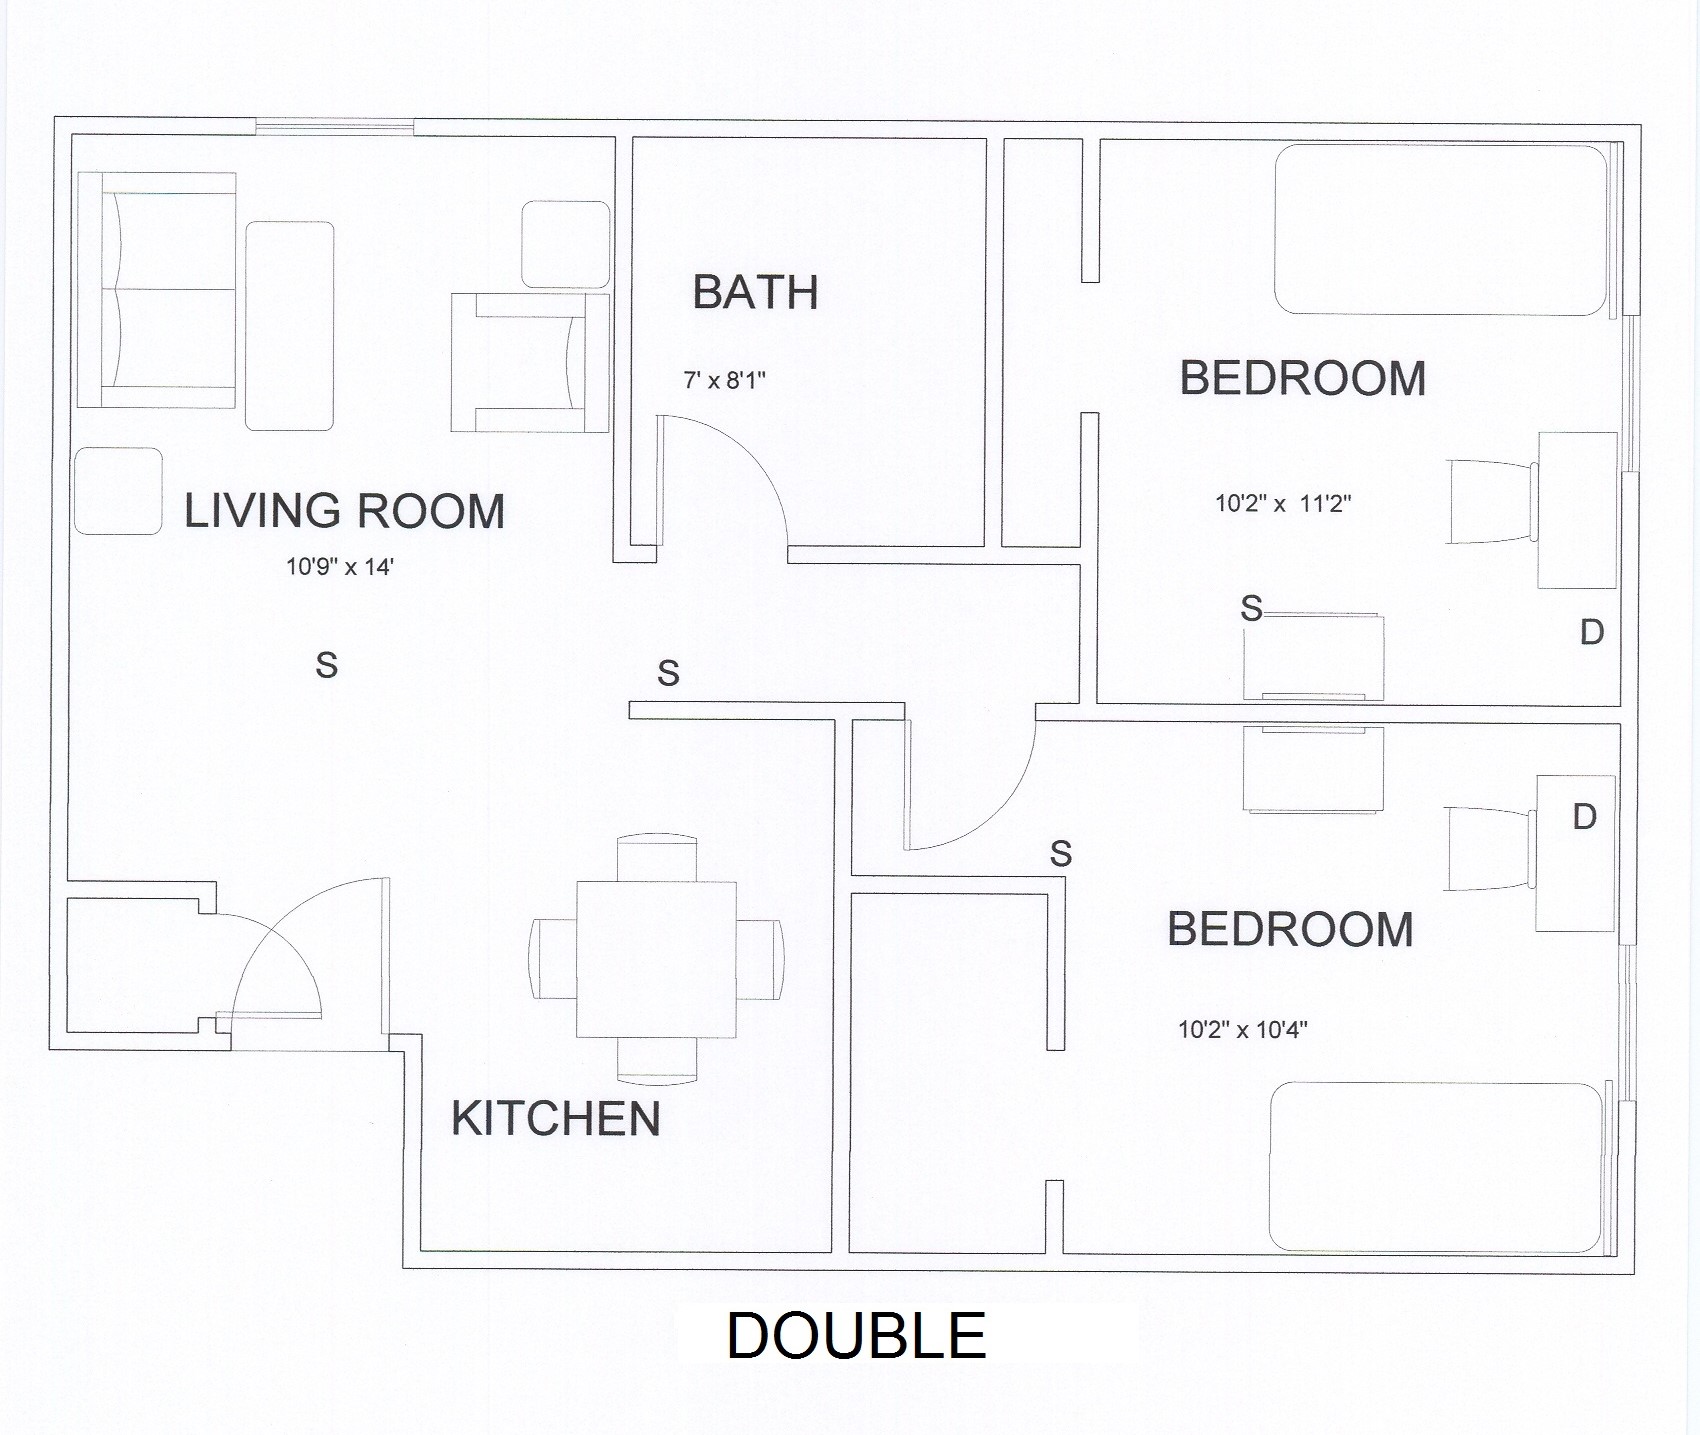 Double floor plan